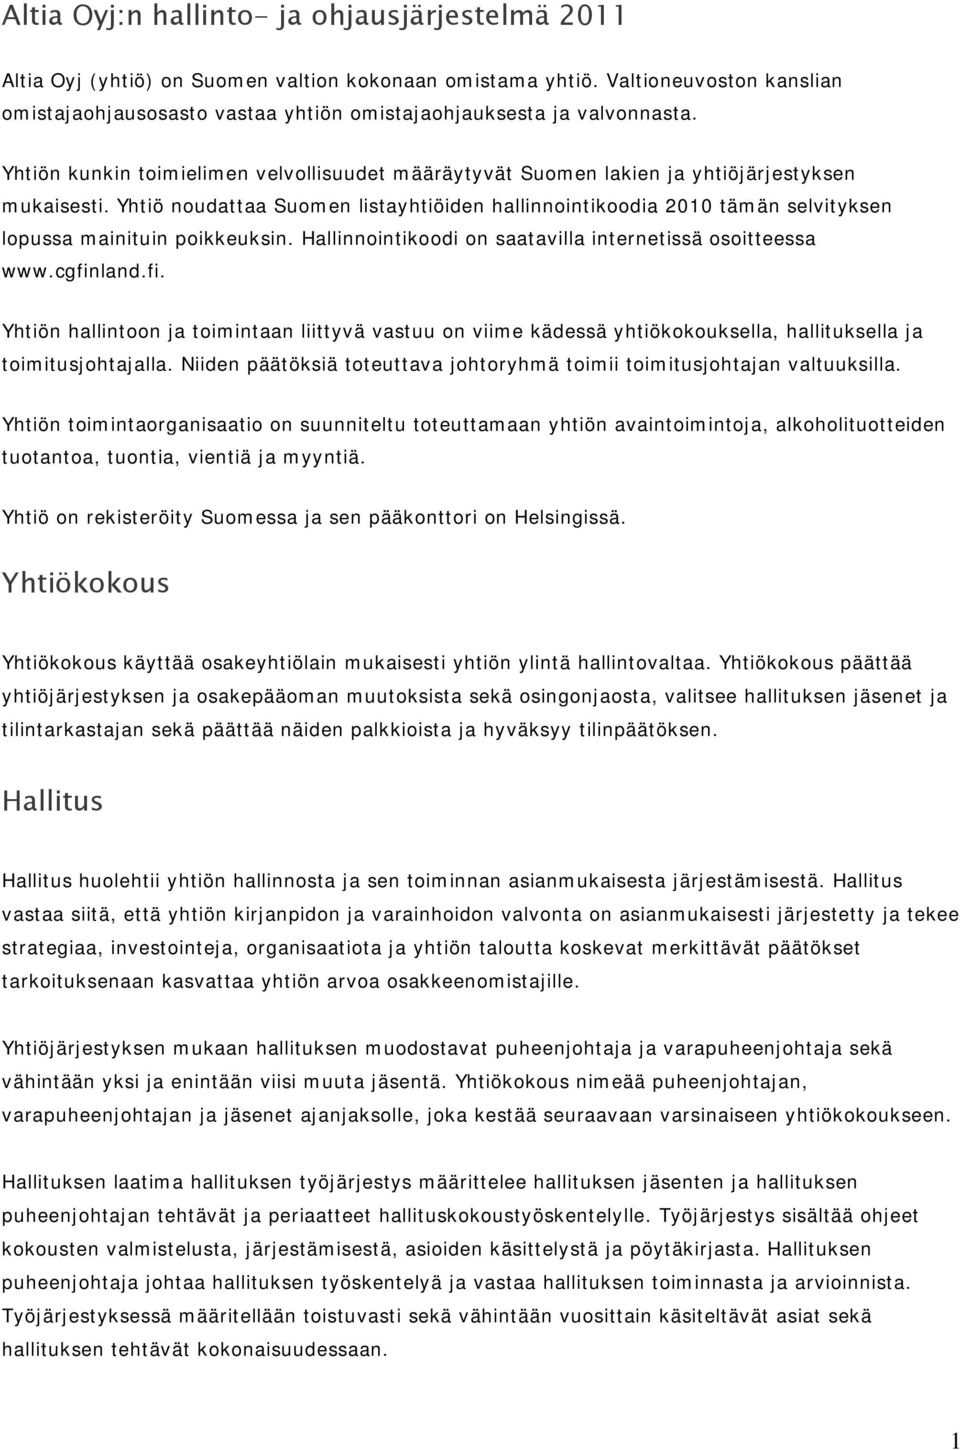 Yhtiö noudattaa Suomen listayhtiöiden hallinnointikoodia 2010 tämän selvityksen lopussa mainituin poikkeuksin. Hallinnointikoodi on saatavilla internetissä osoitteessa www.cgfin